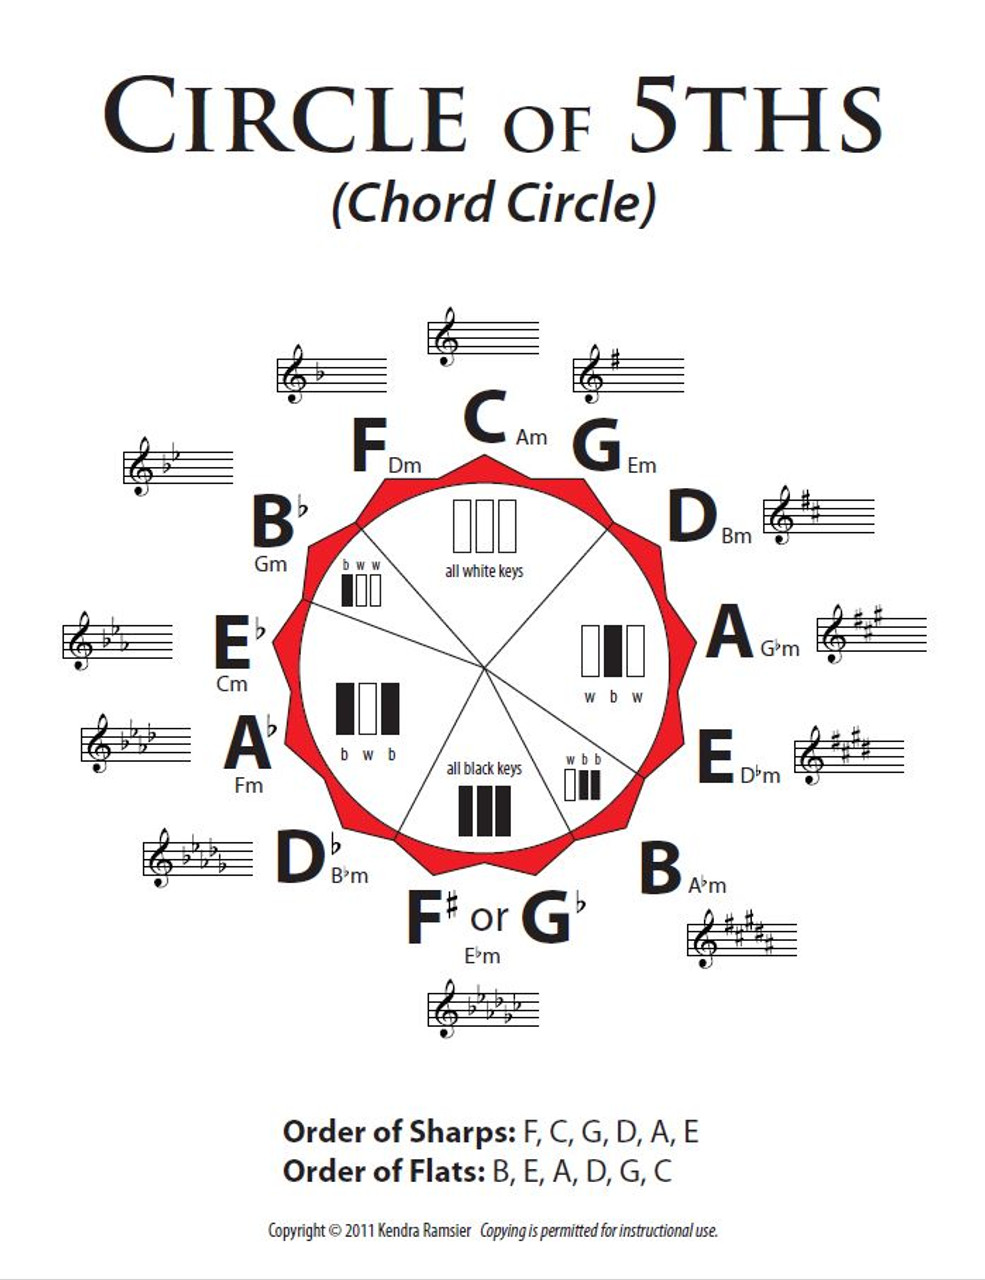 Precious Piano - Chord Circle (Circle of 5ths) - Melt the Heart